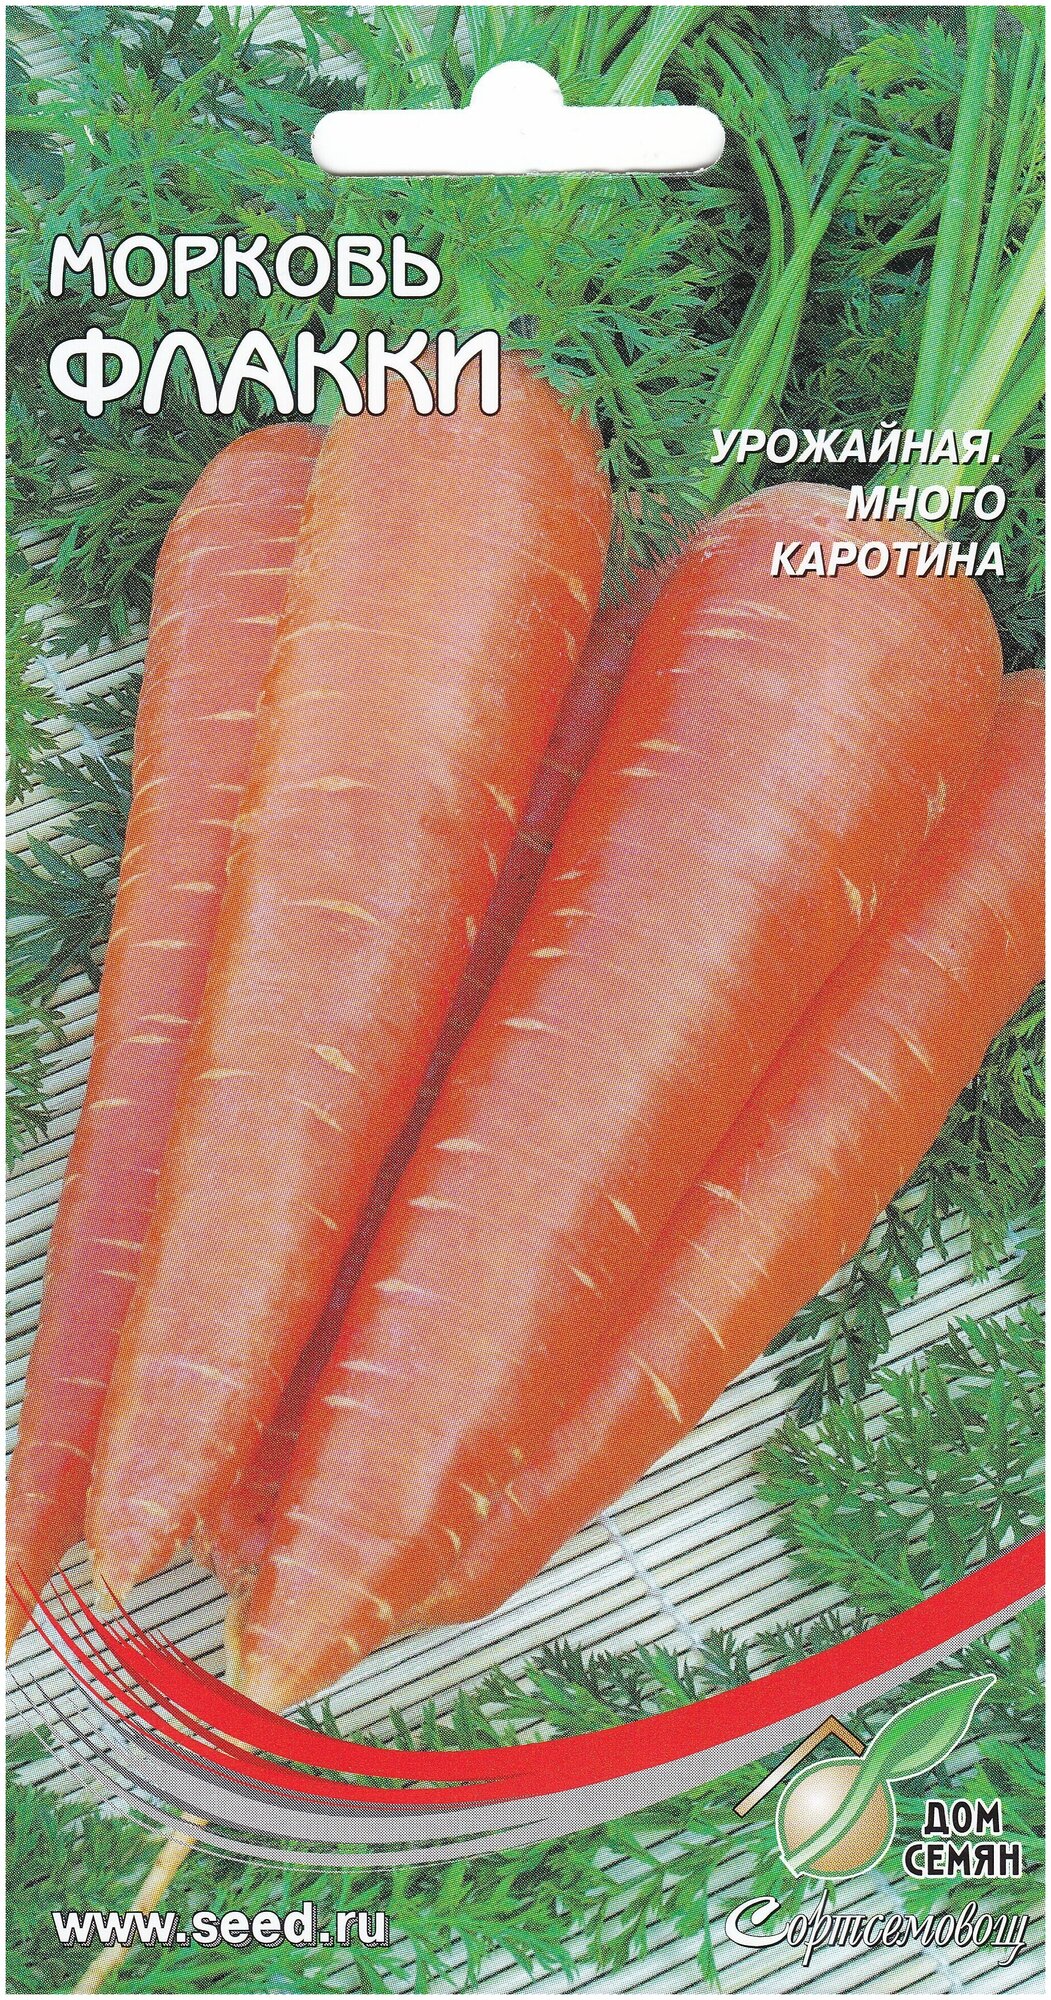 Морковь Флакки, 1700 семян